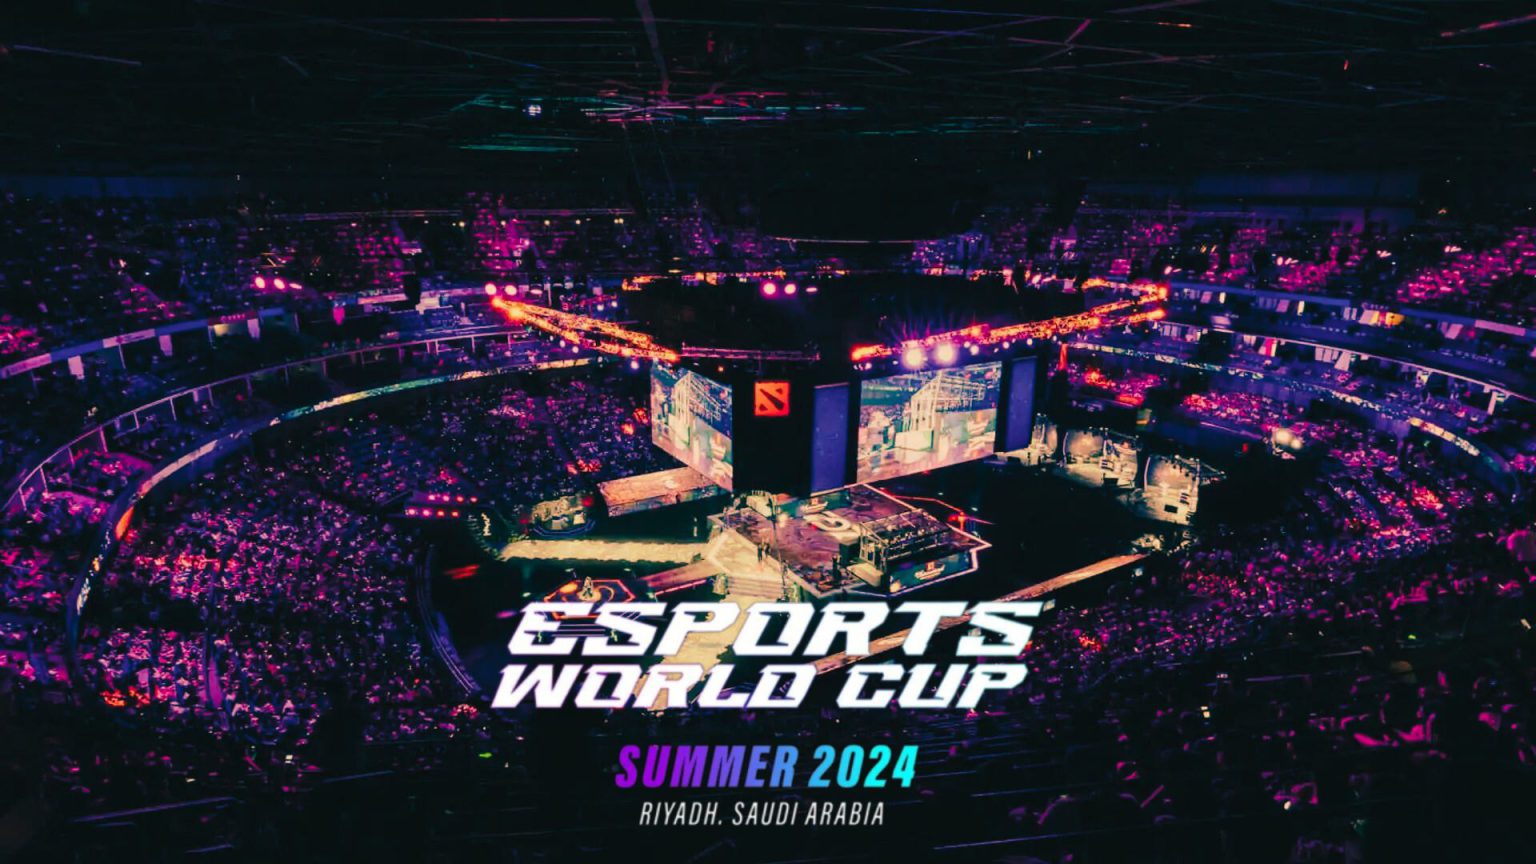 Se revelan nuevos detalles de la Esports World Cup 2024 un evento que